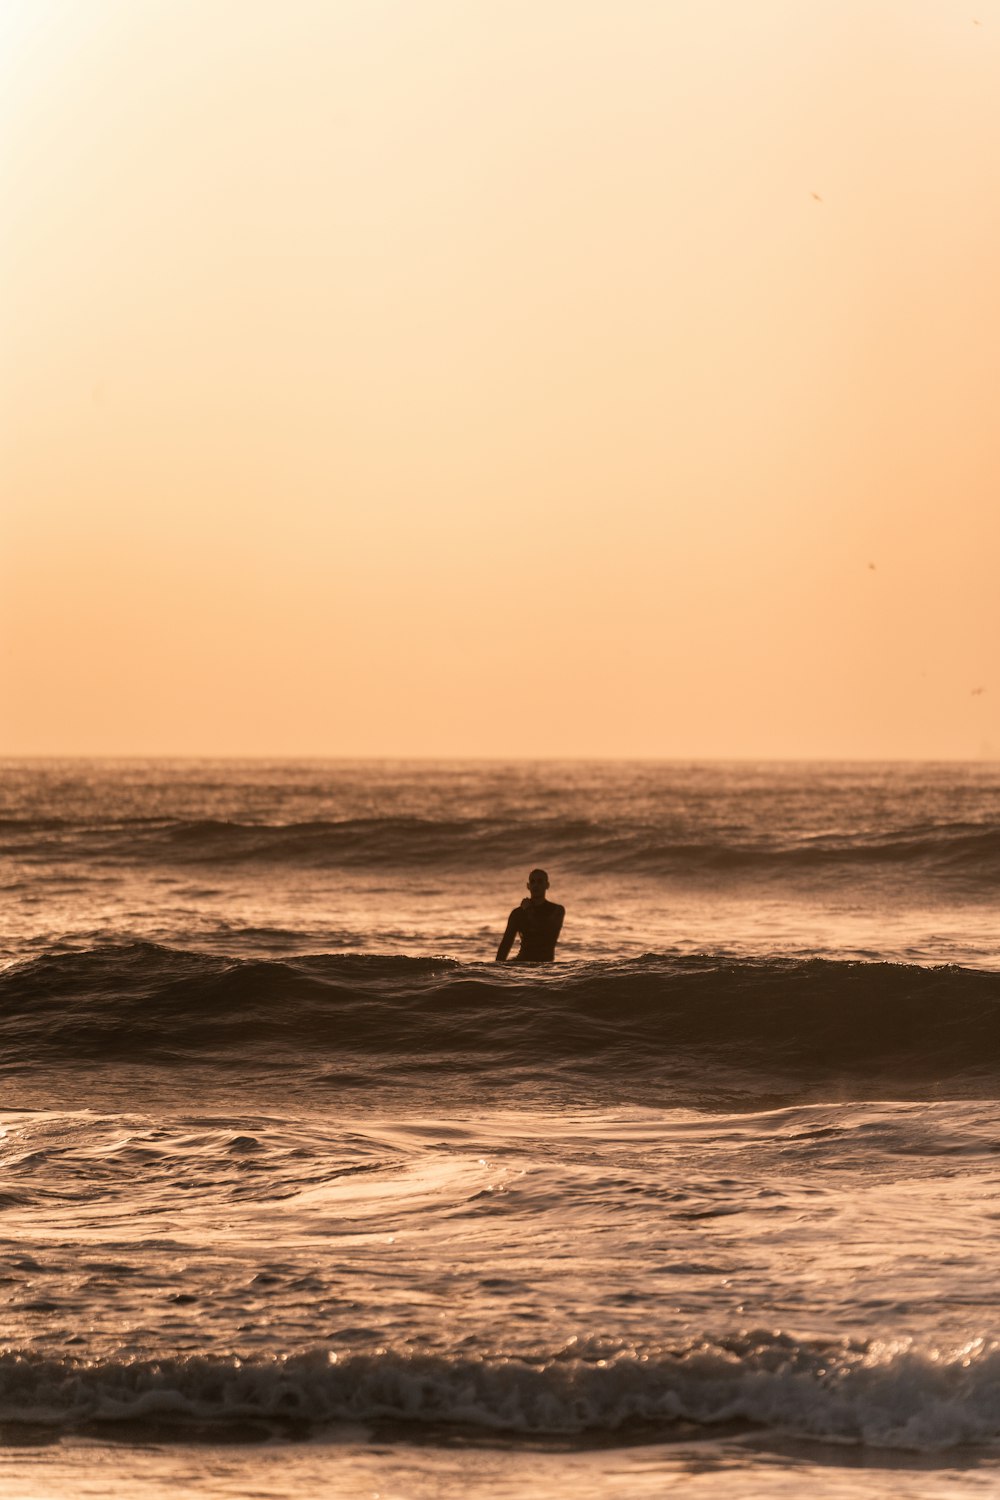 una persona surfeando en el mar